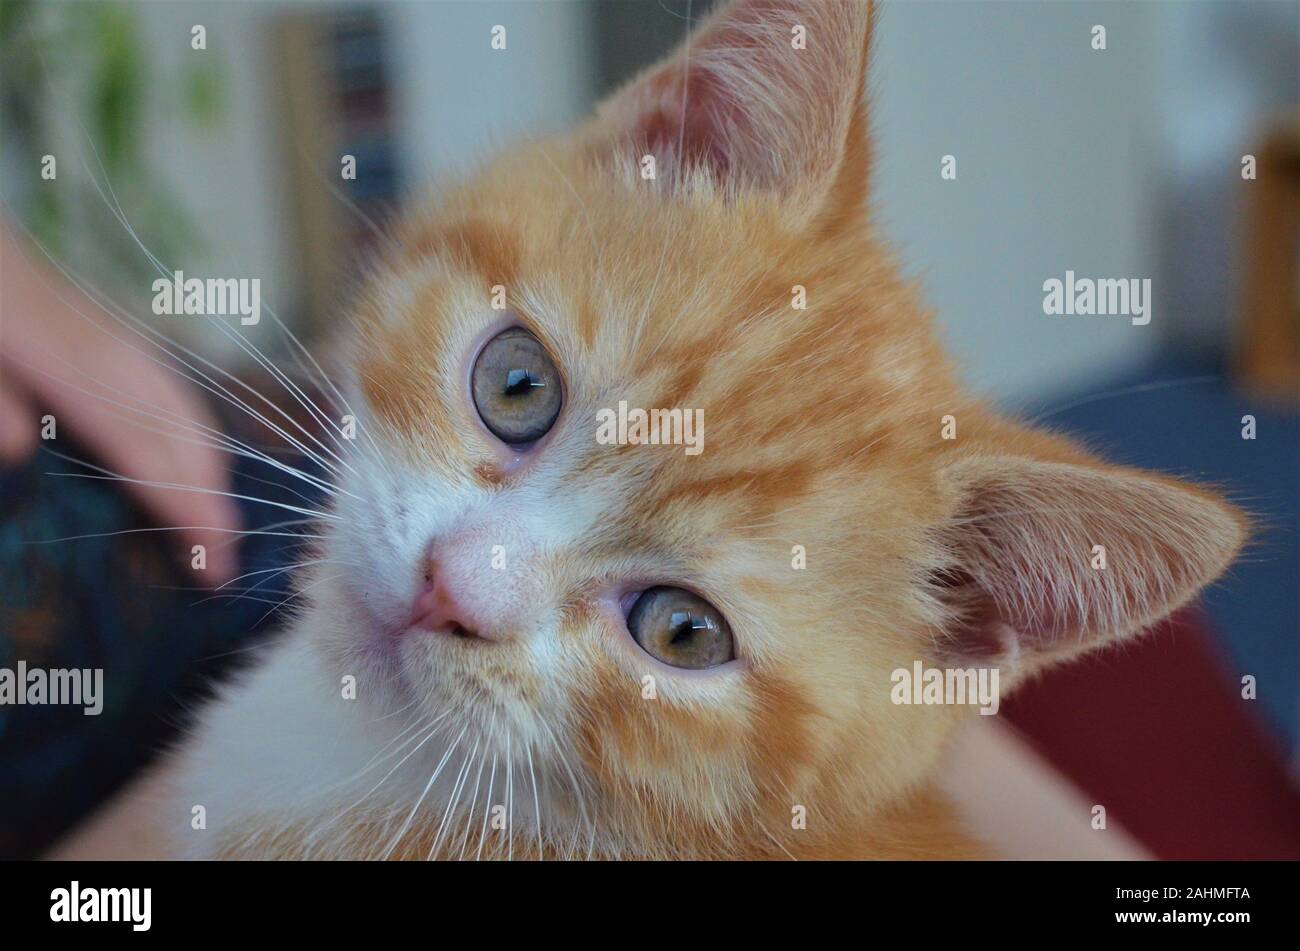 Rouge / jaune / orange cat in close up Banque D'Images